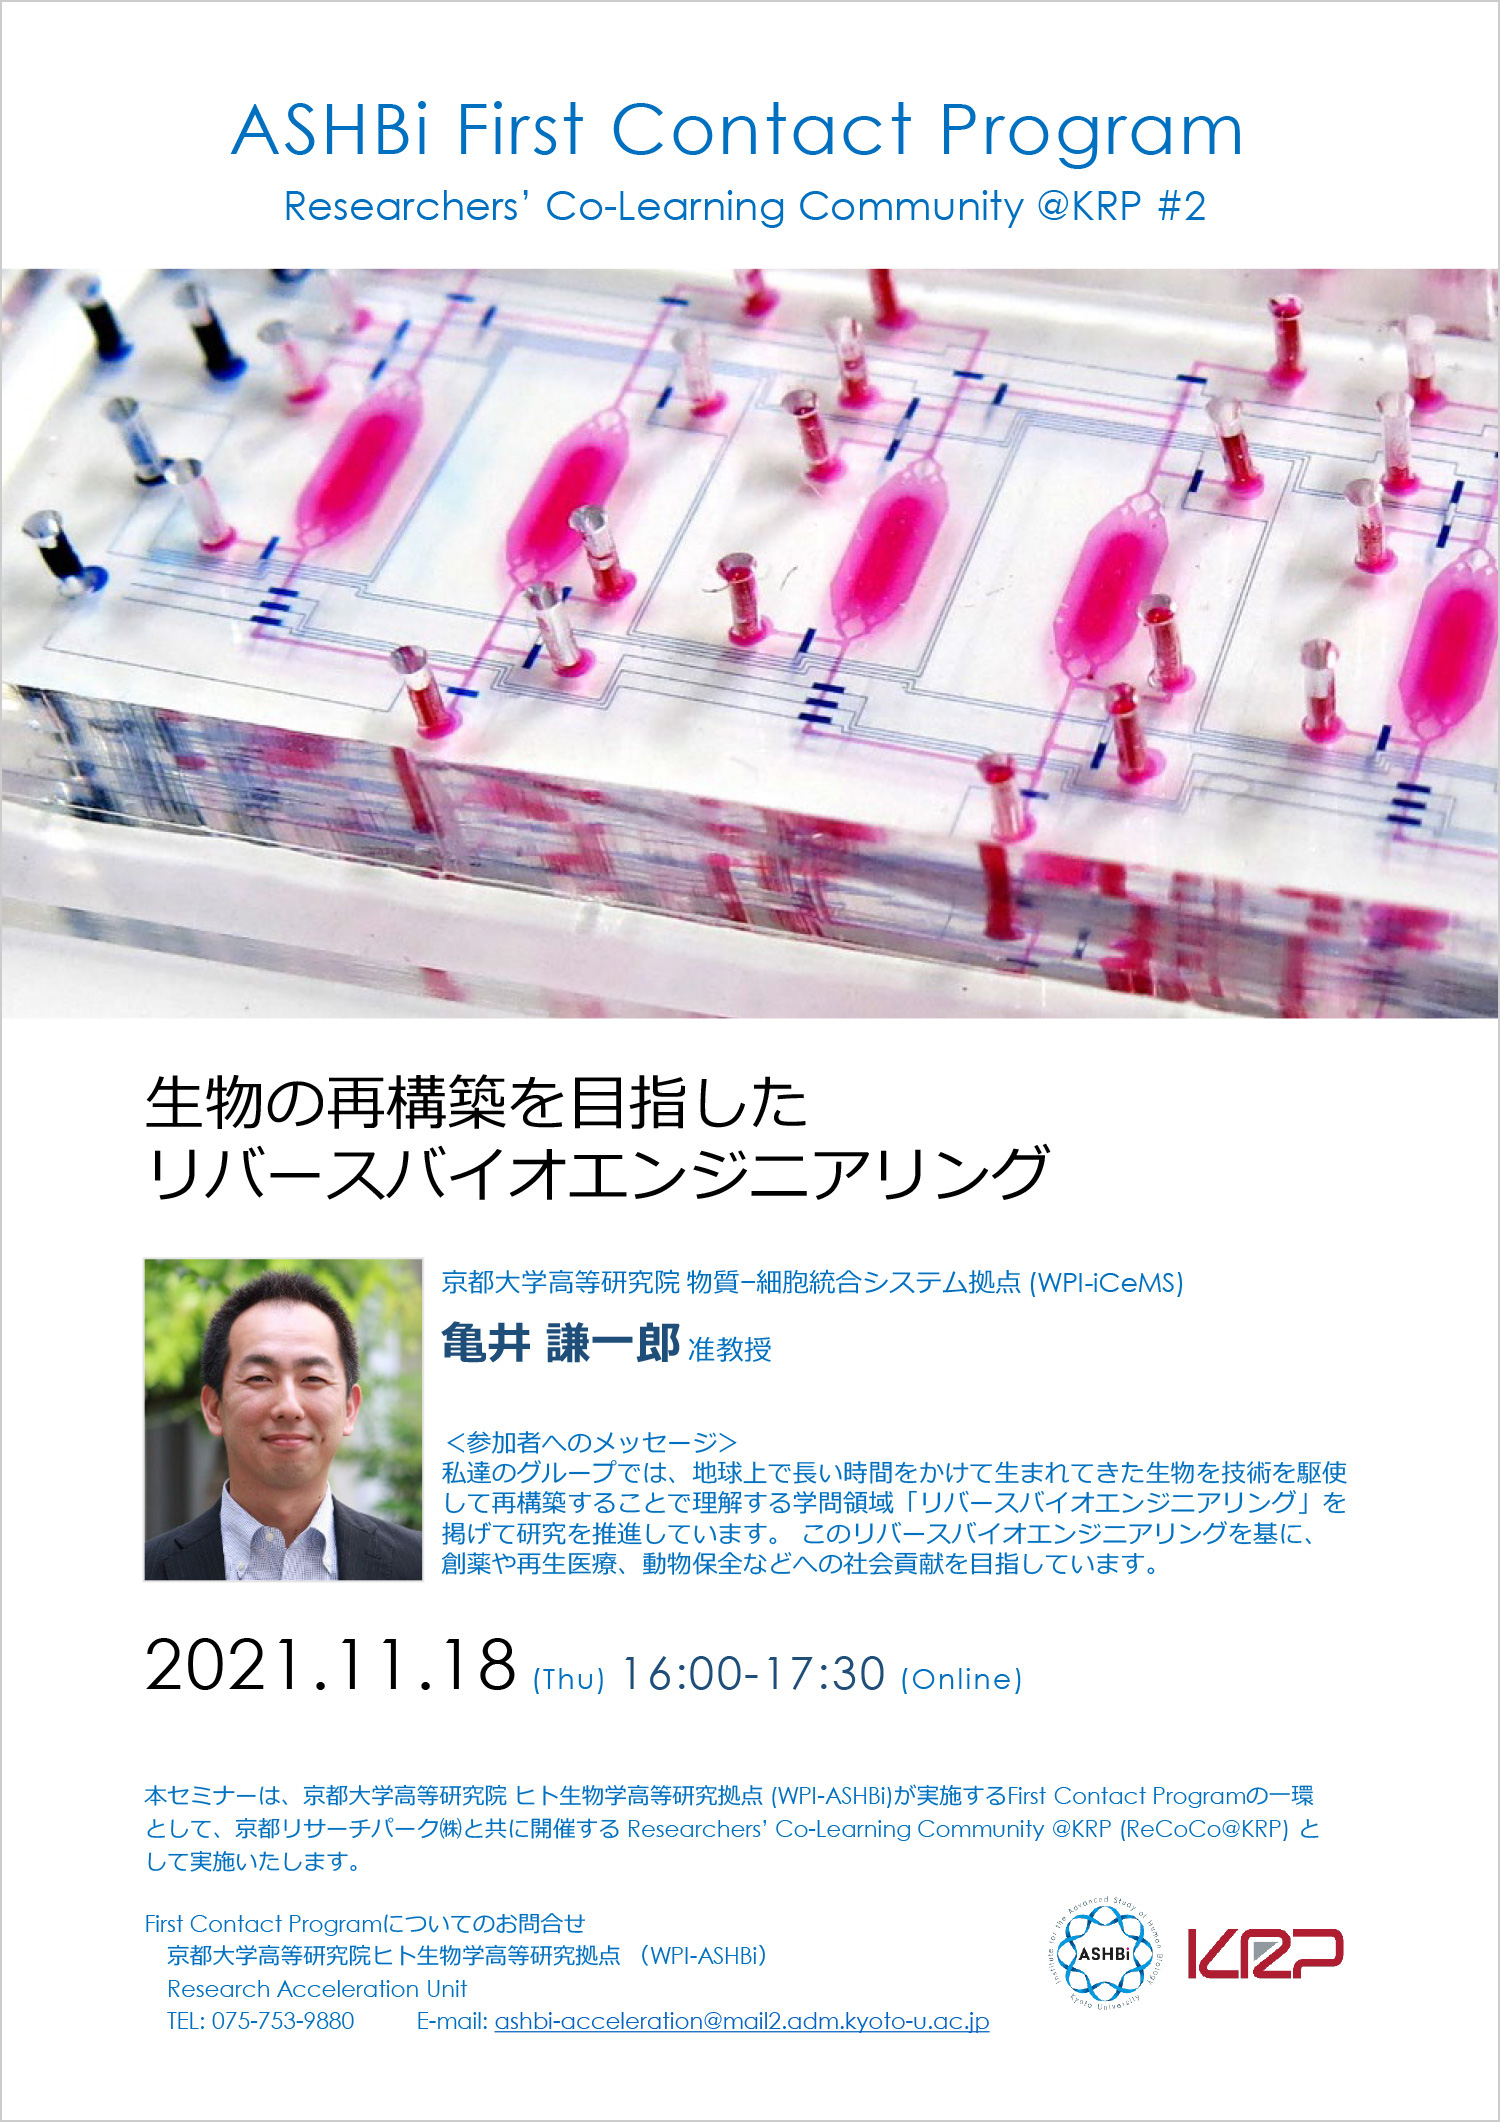 First Contact Program #2 (Dr. Ken-ichiro Kamei)